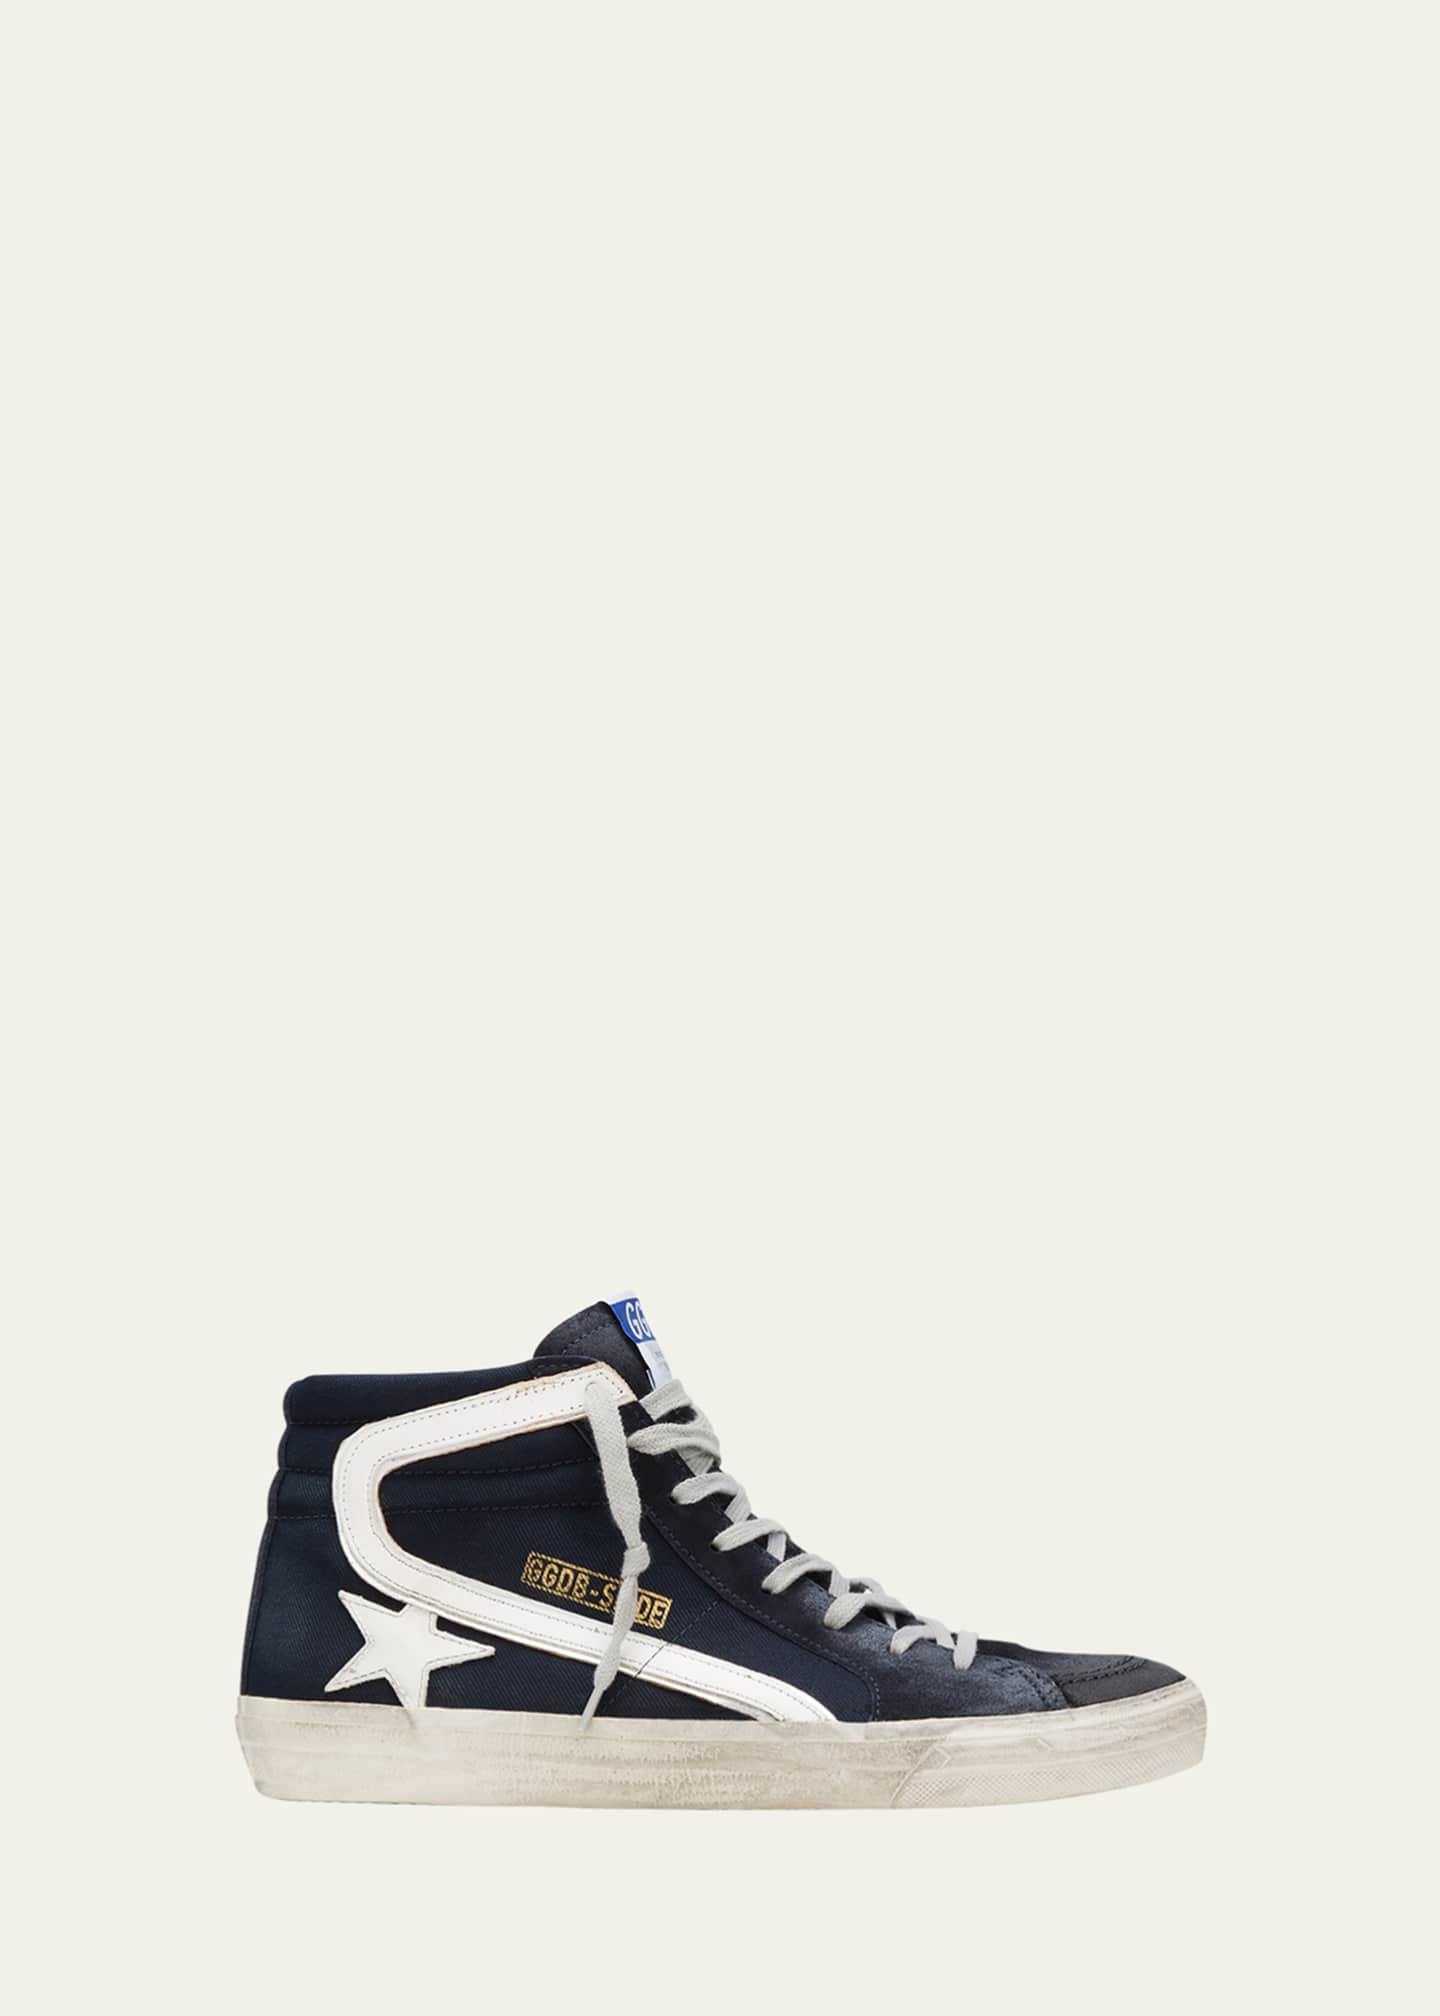 Golden Men's Distressed Denim Leather High-Top Sneakers - Bergdorf Goodman